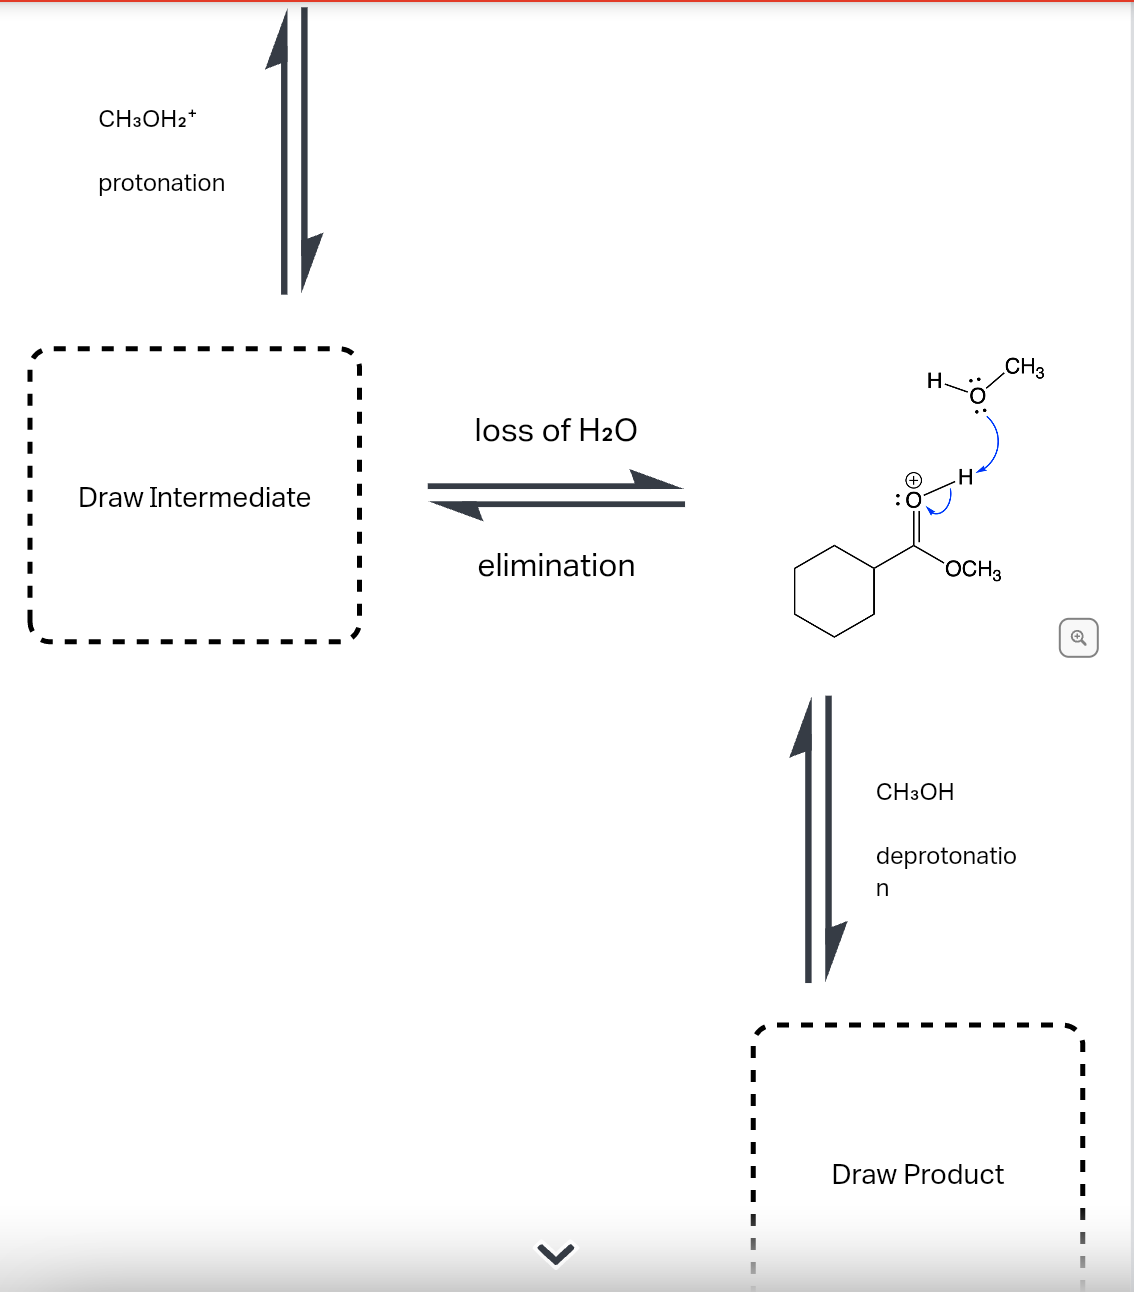 CH3OH₂+
protonation
Draw Intermediate
loss of H₂O
elimination
>
||
OCH3
CH3OH
n
CH3
deprotonatio
Draw Product
1
I
I
I
I
1
I
I
I
I